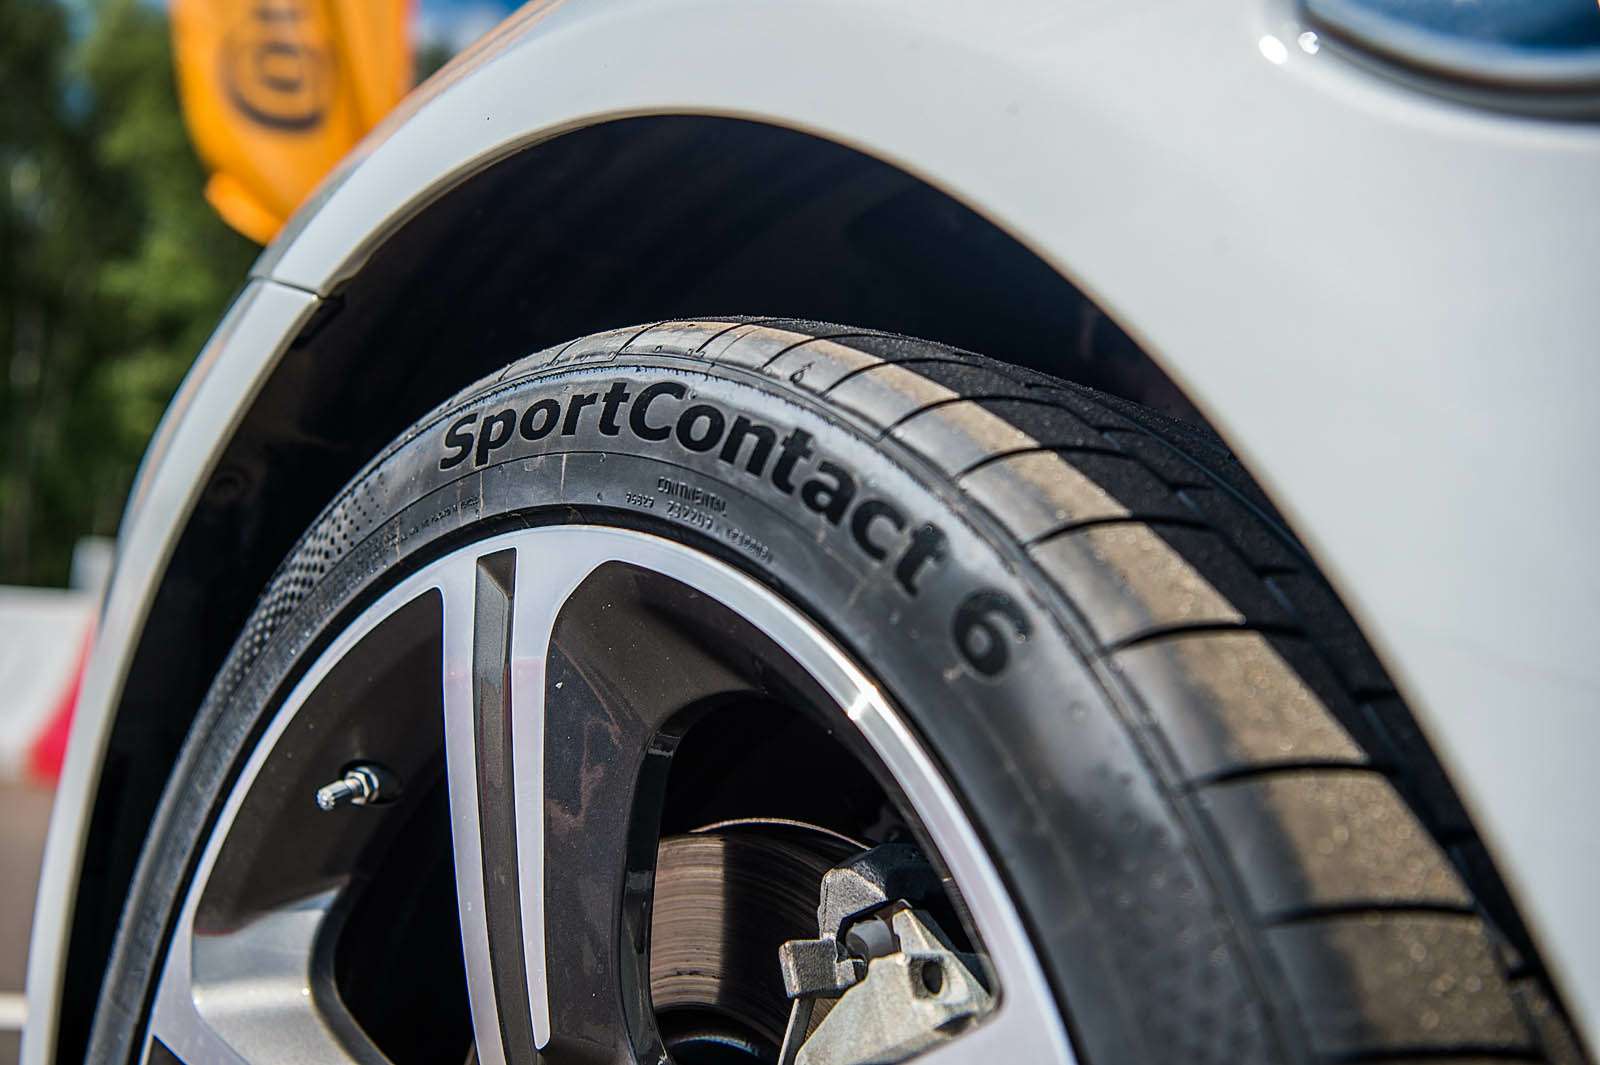 Шины Conti SportContact 6 разрабатывались с расчетом эксплуатации как на заднем, так и на переднем приводе.